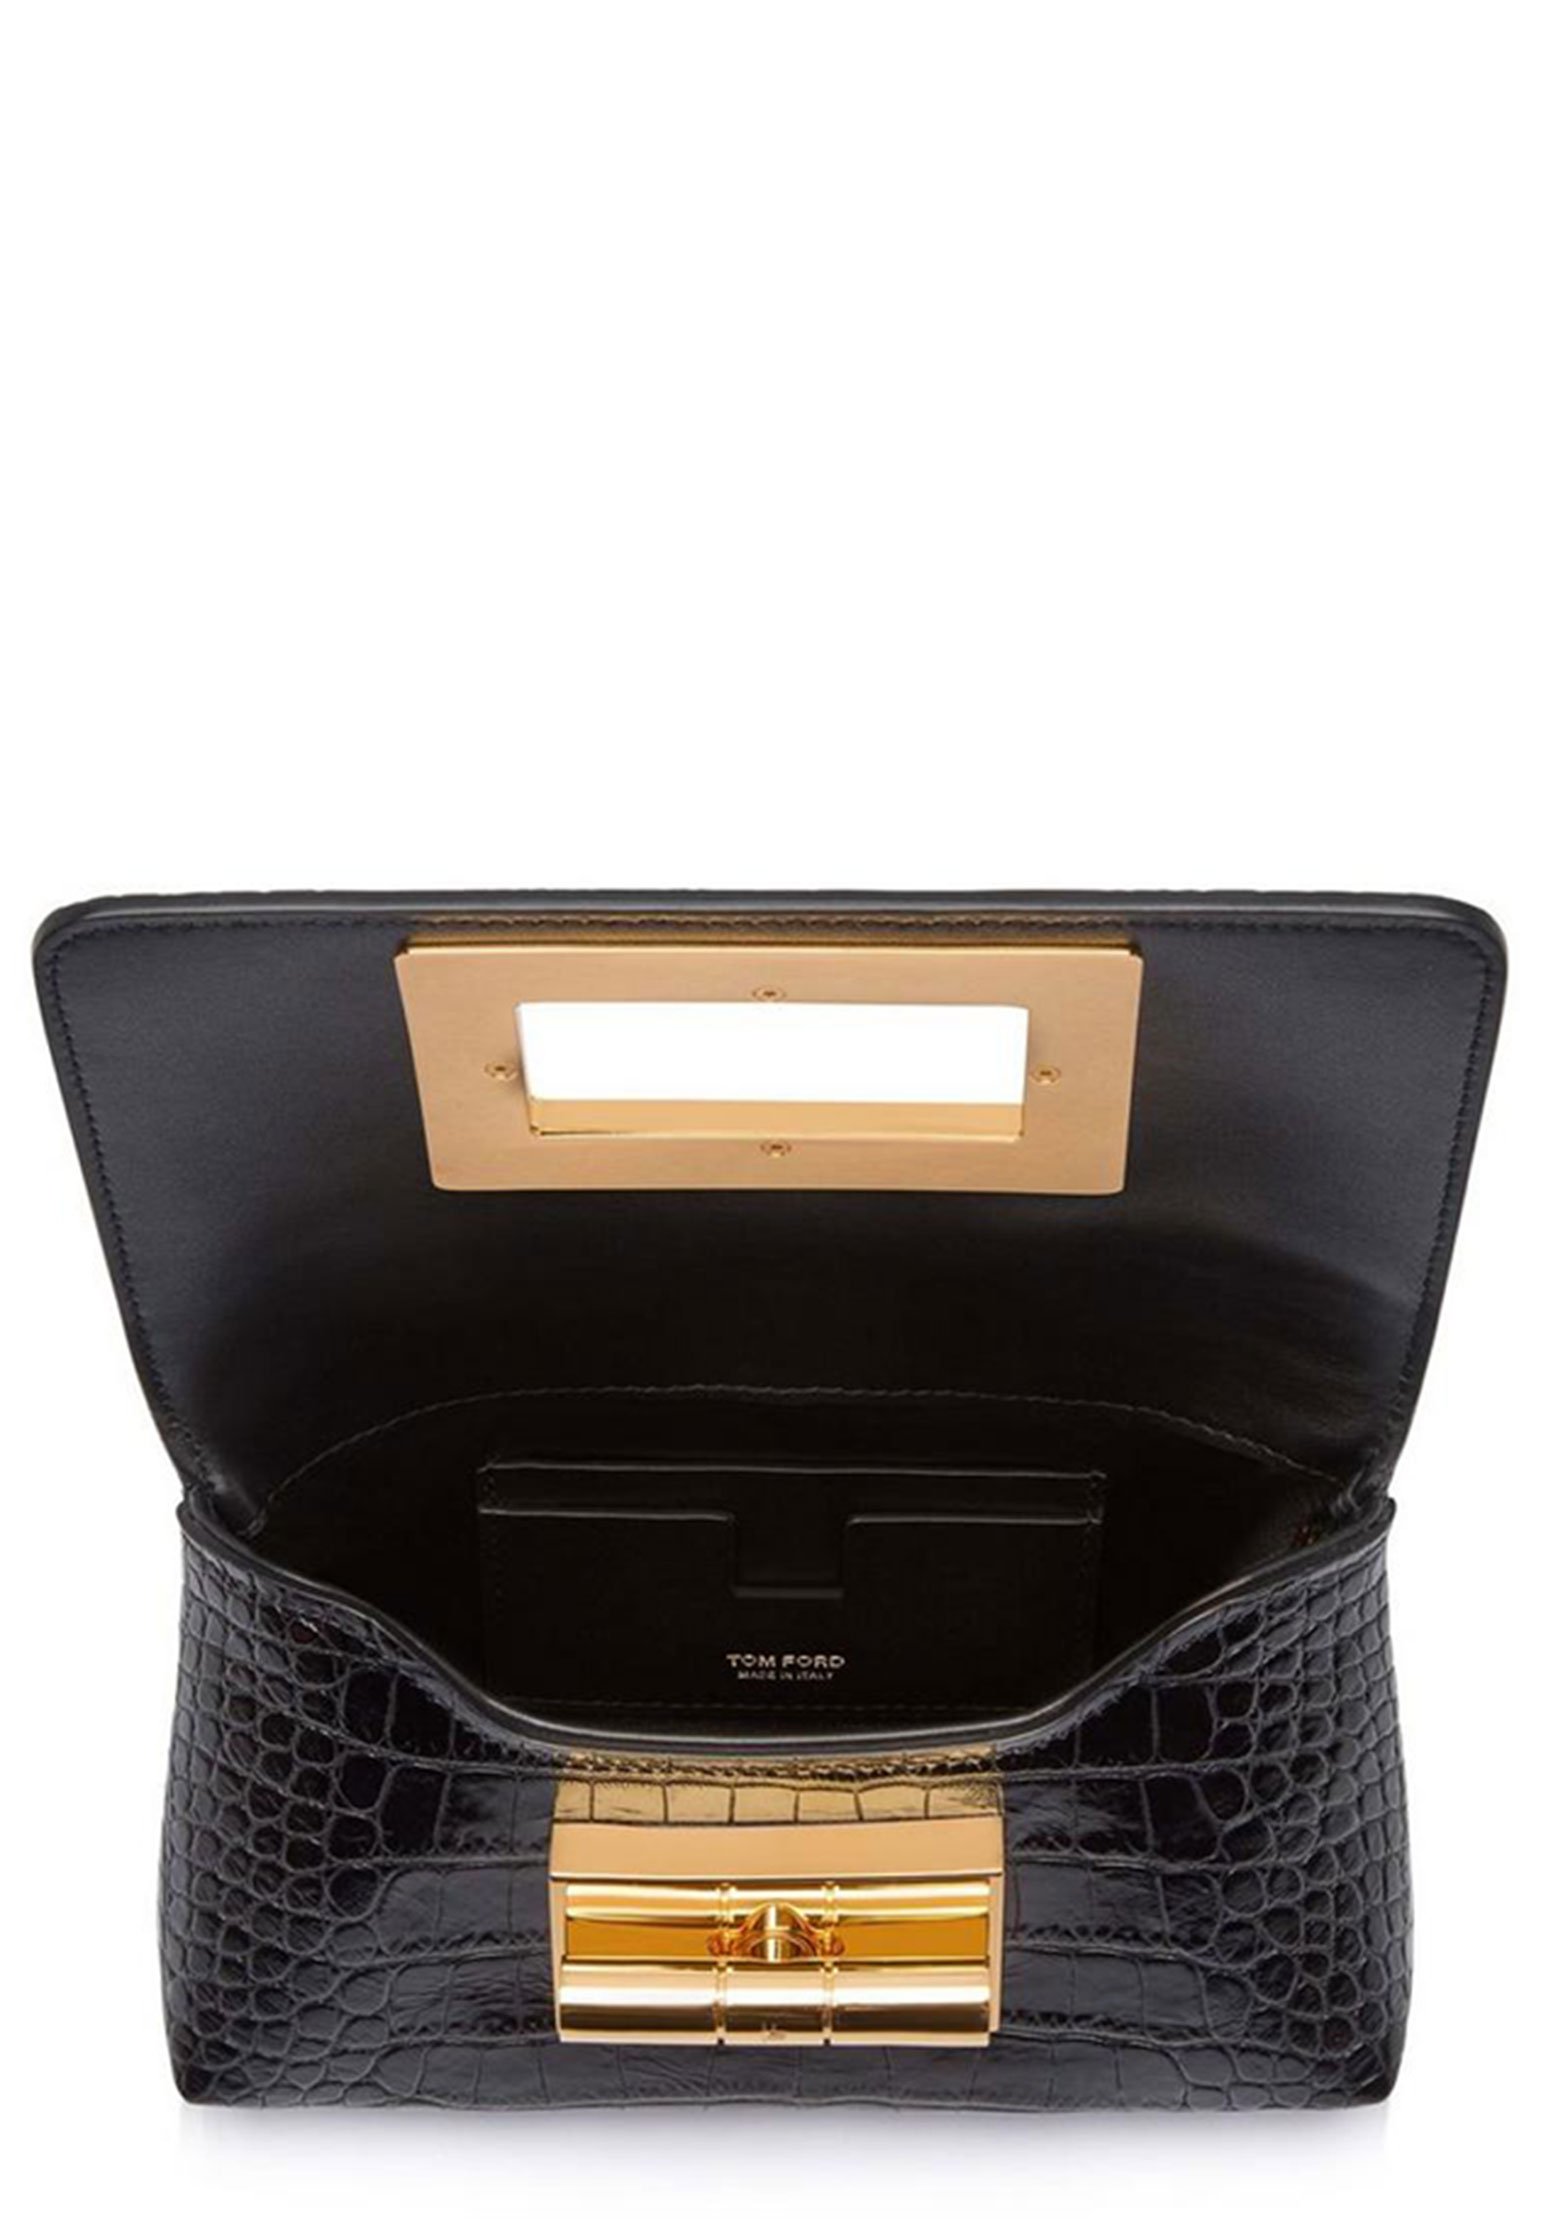 Bag TOM FORD Color: black (Code: 1937) in online store Allure